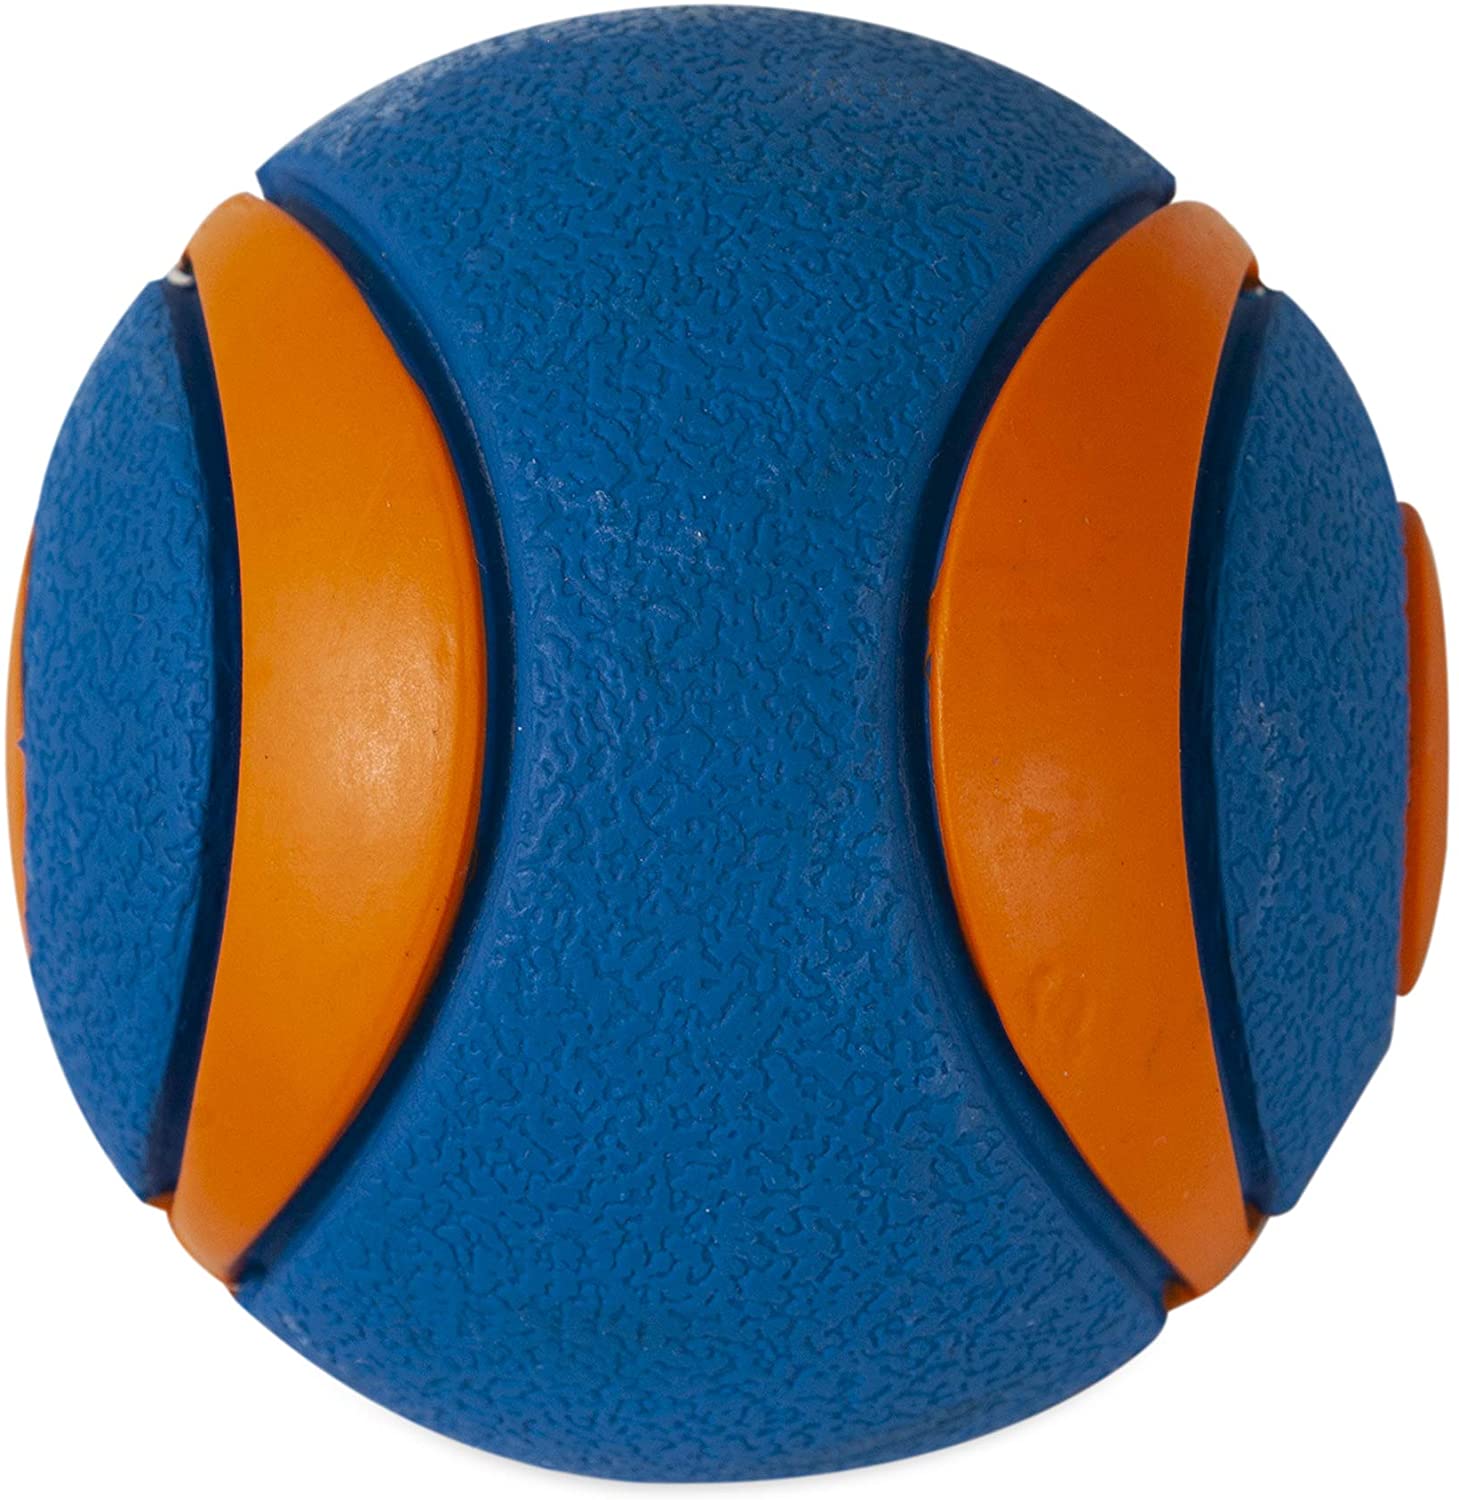  Chuckit! 52069 Ultra Squeaker Ball, 1 Pelota para Perros Compatible con el Lanzador, L 